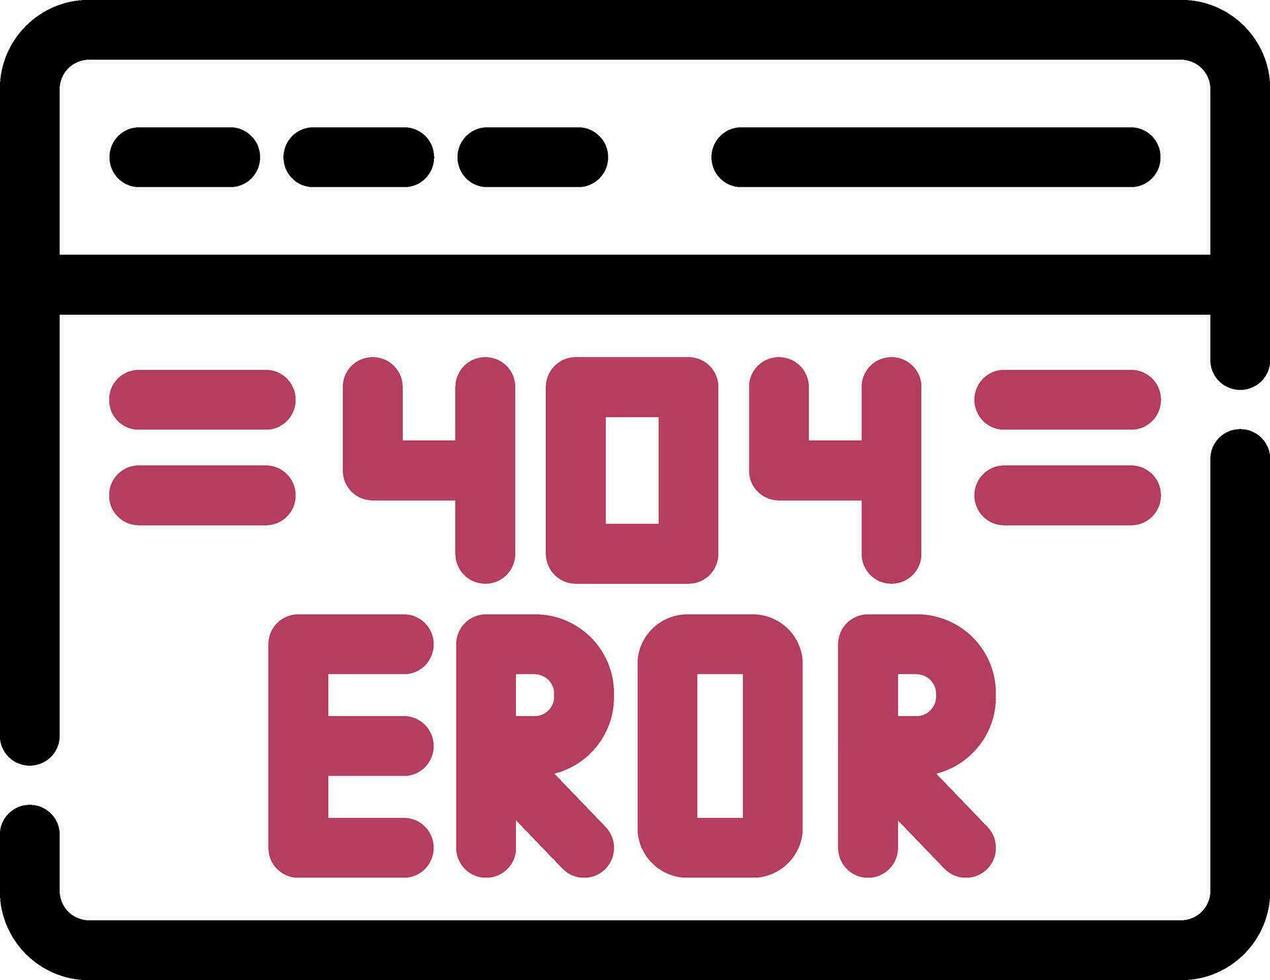 Diseño de icono creativo de error 404 vector